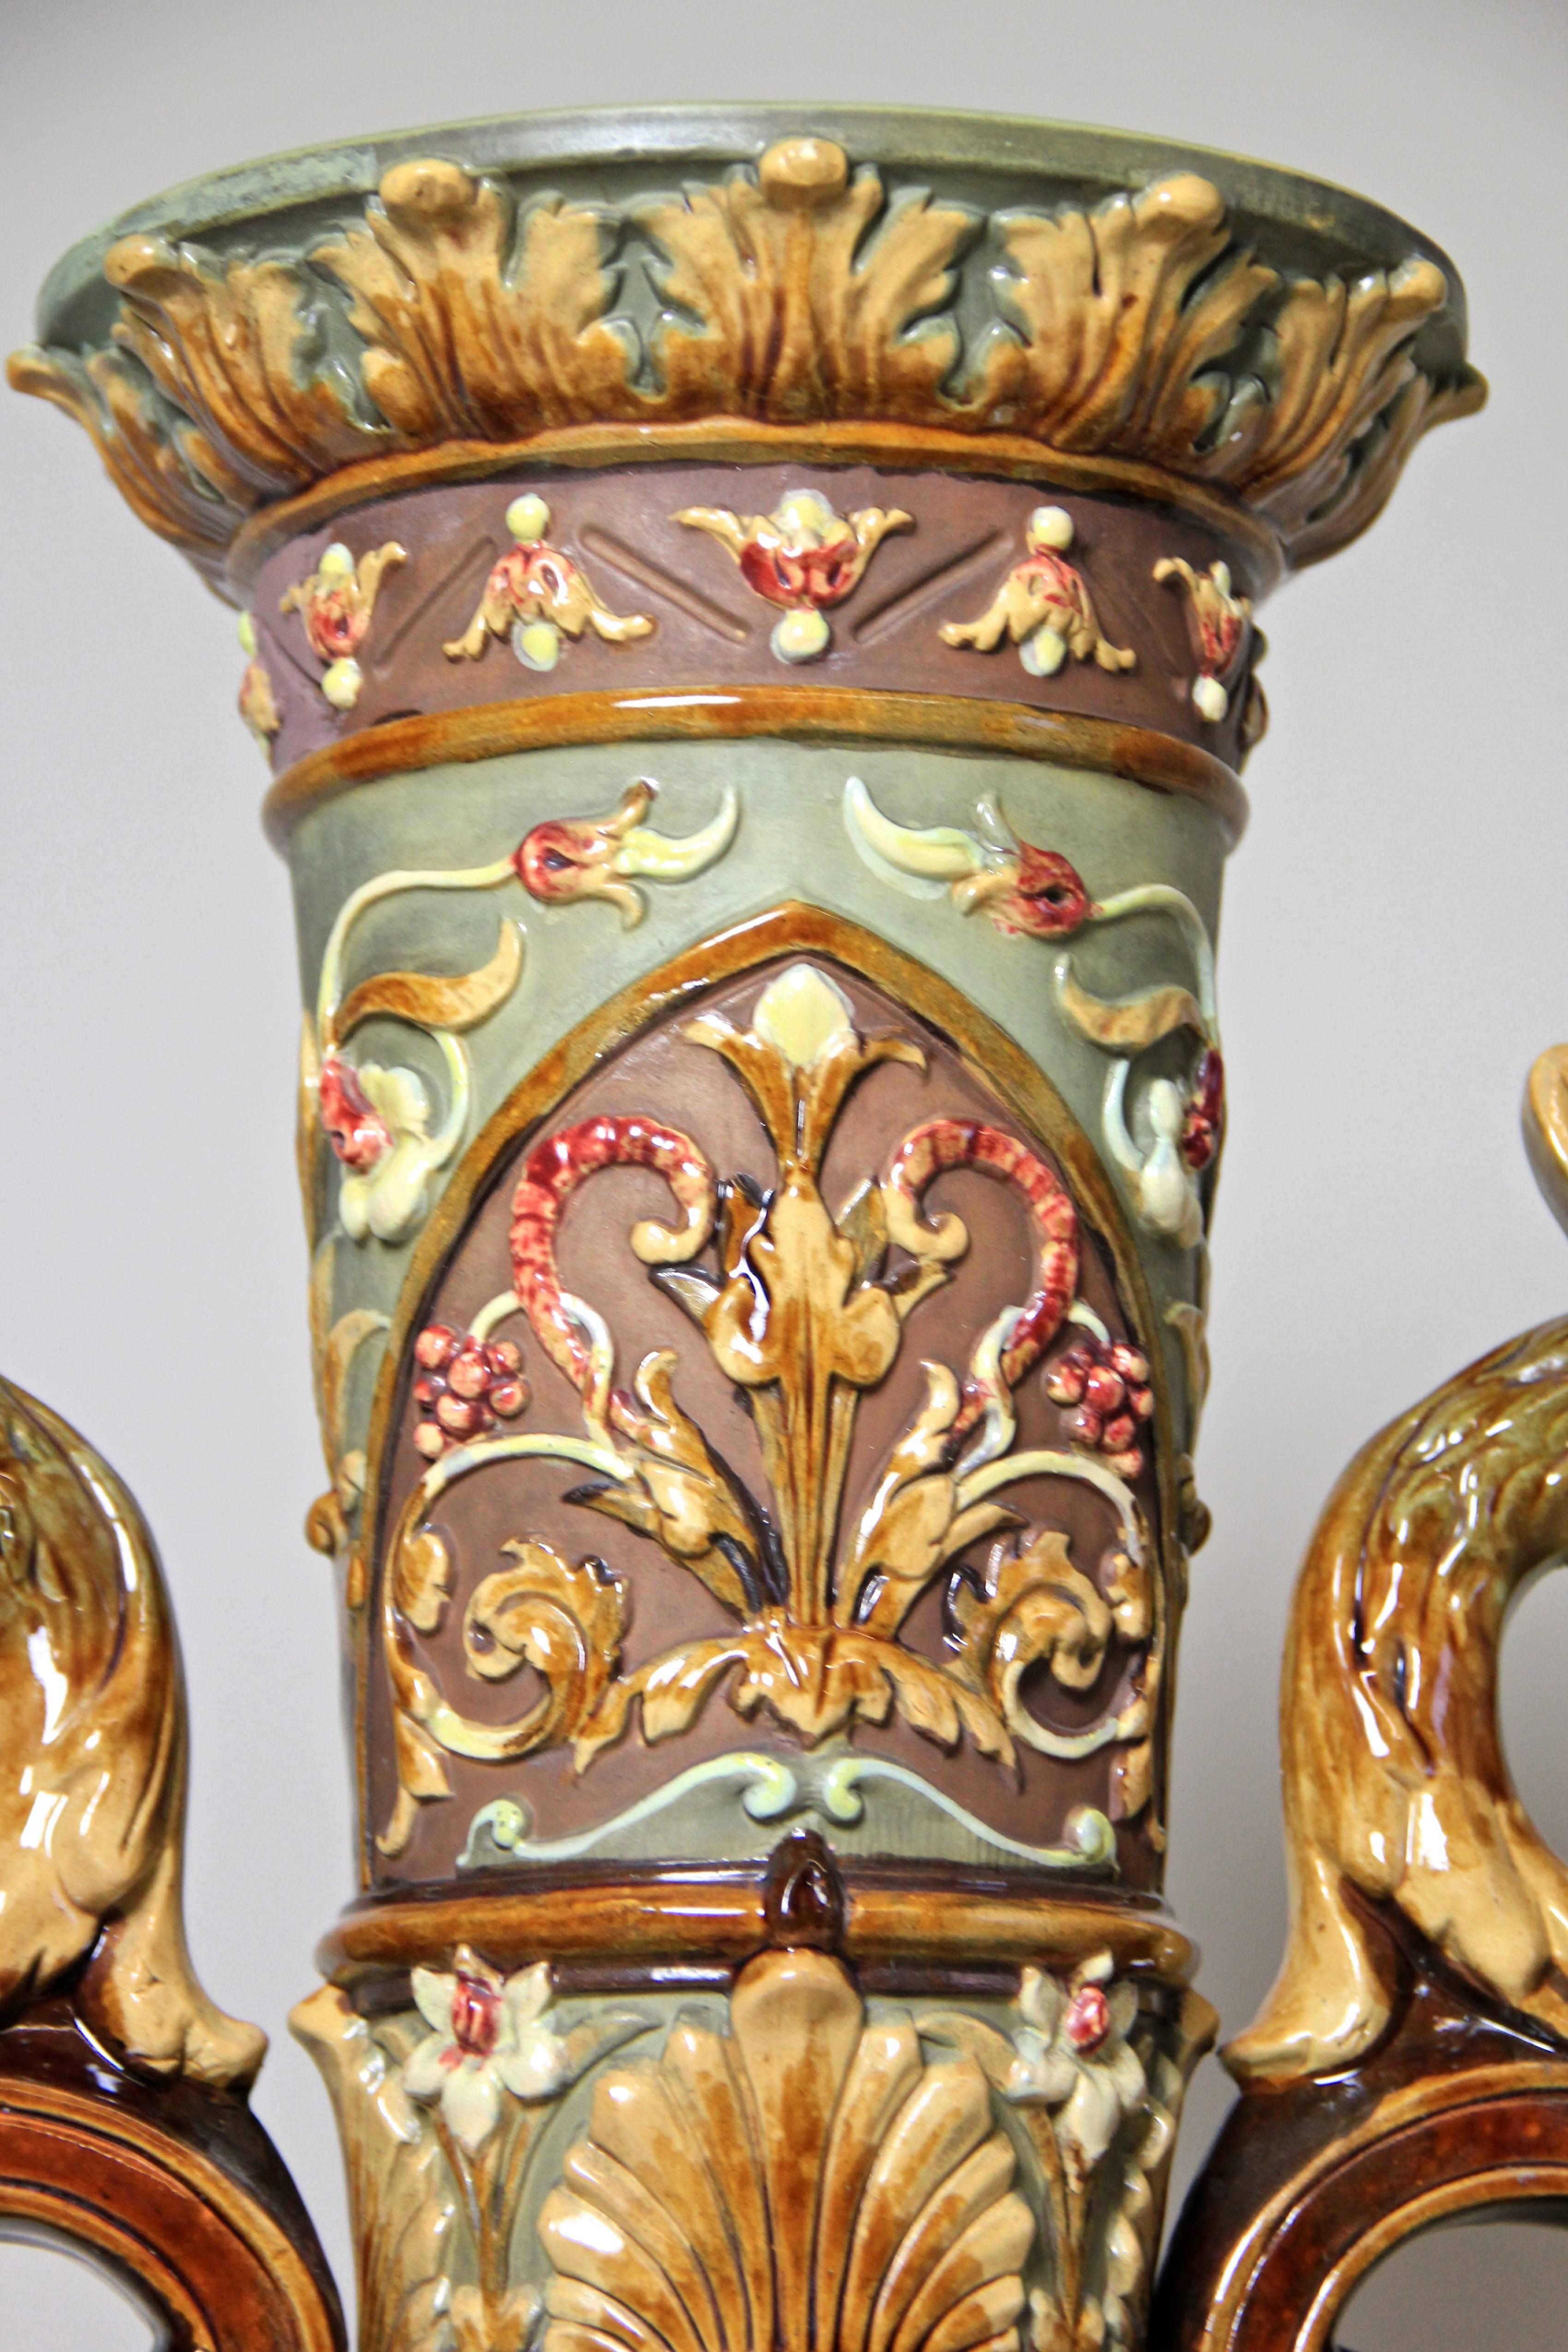 Bemerkenswerte große Majolika-Vase aus der weltberühmten Majolika-Manufaktur von Wilhelm Schiller & Sohn in Böhmen, um 1880. Ein herausragendes, seltenes Stück Majolika-Kunst, das mit größter Sorgfalt und Liebe zum Detail hergestellt wurde: man